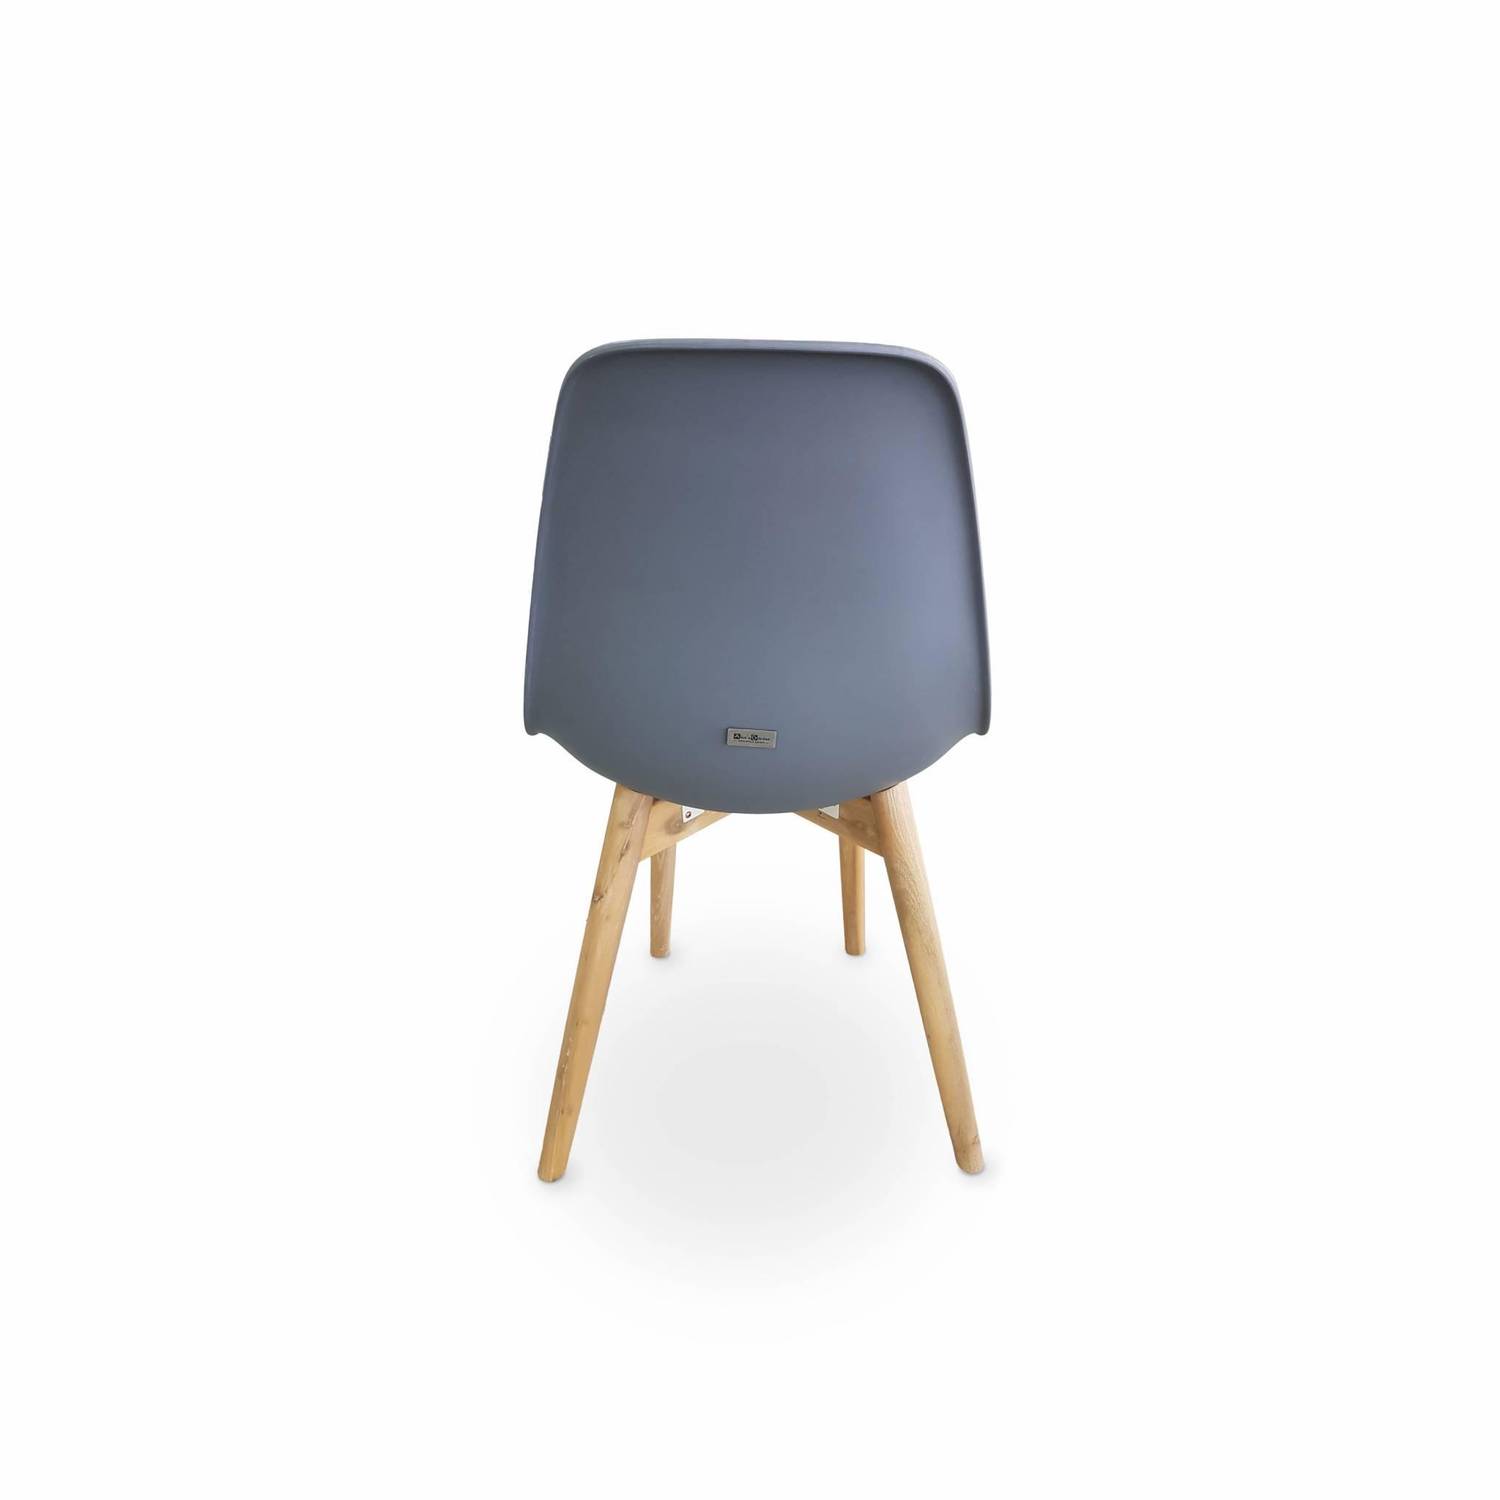 4er Set skandinavische Stühle Penida, aus Akazienholz und anthrazitfarbenem Kunstharz gespritzt, innen/außen Photo3